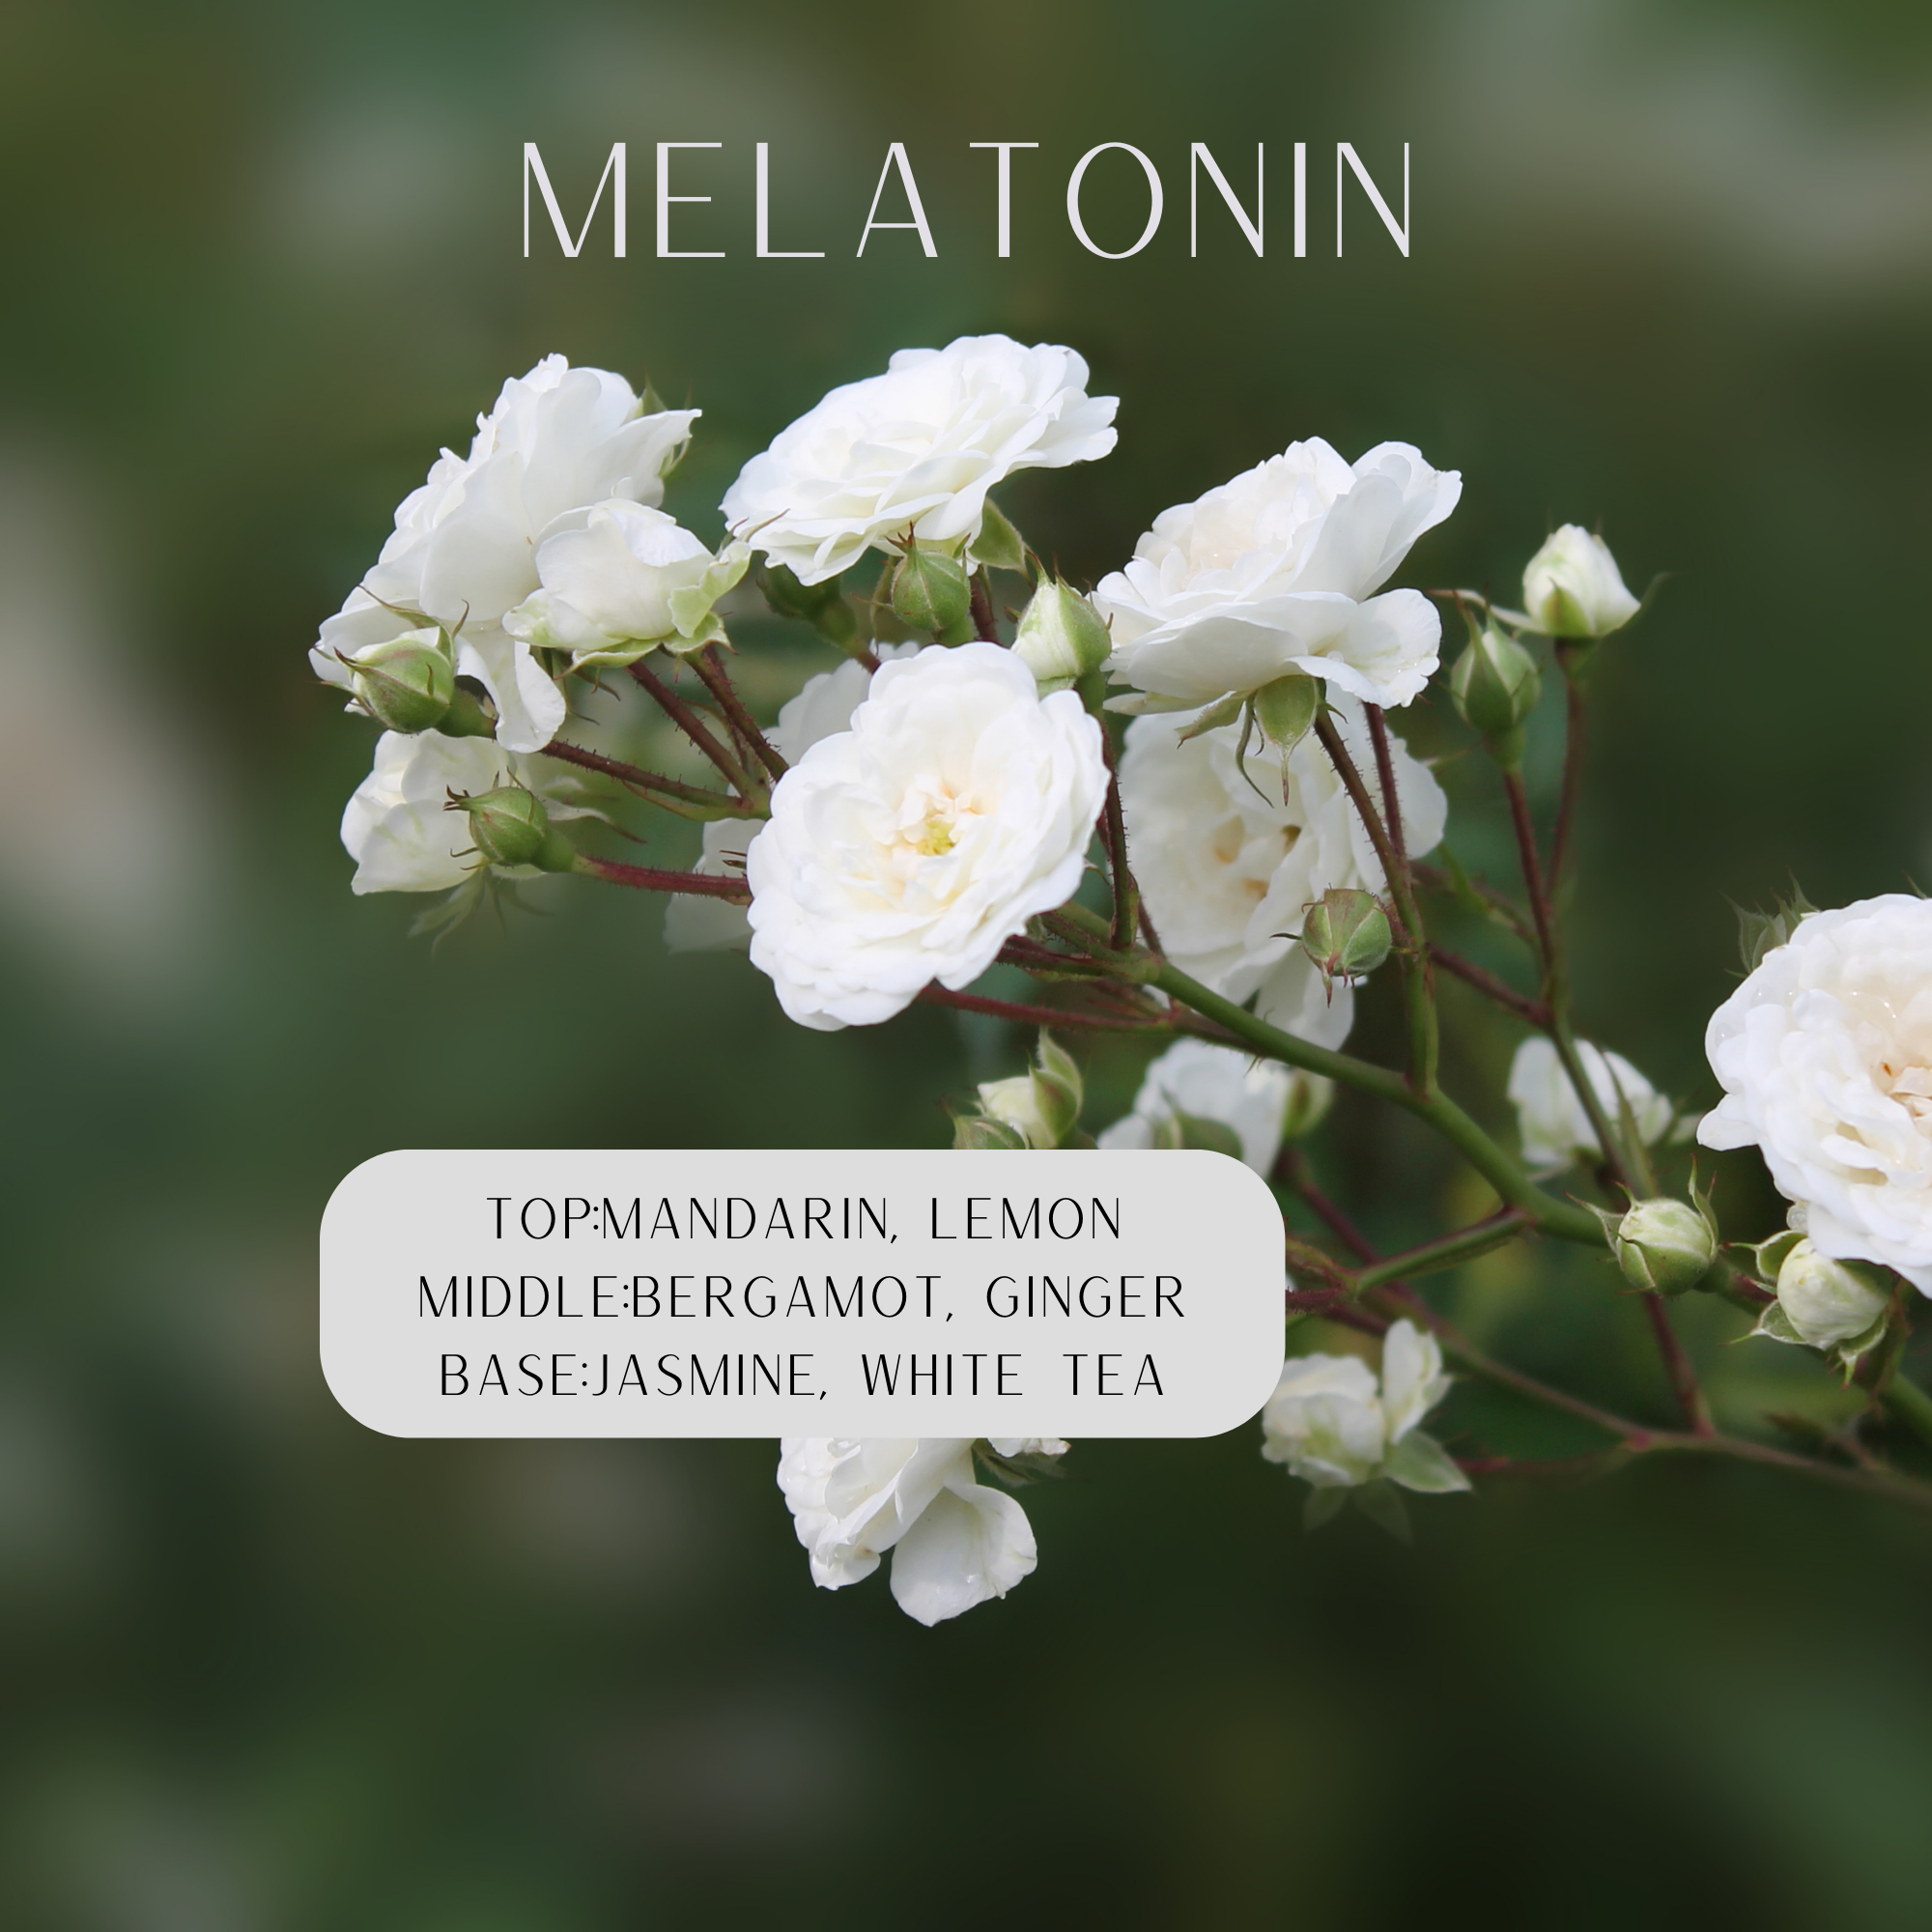 White flowers blurred green background says melatonin top: mandarin, lemon middle: bergamot, ginger base: jasmine, white tea